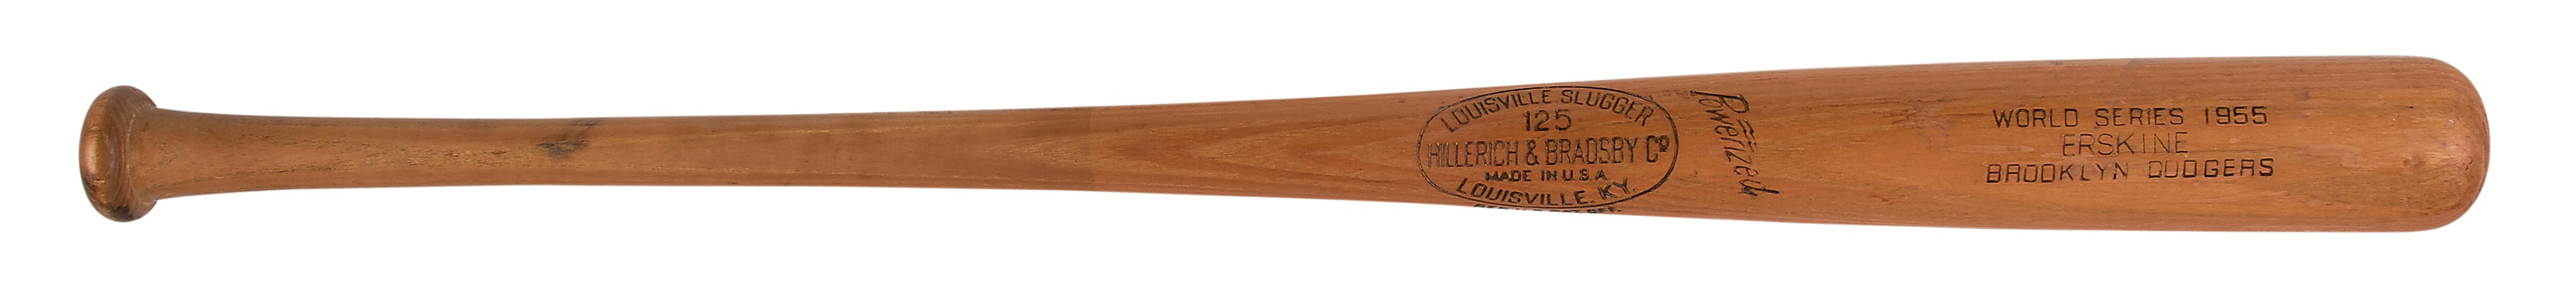 - 1955 Carl Erskine Game Used World Series Bat